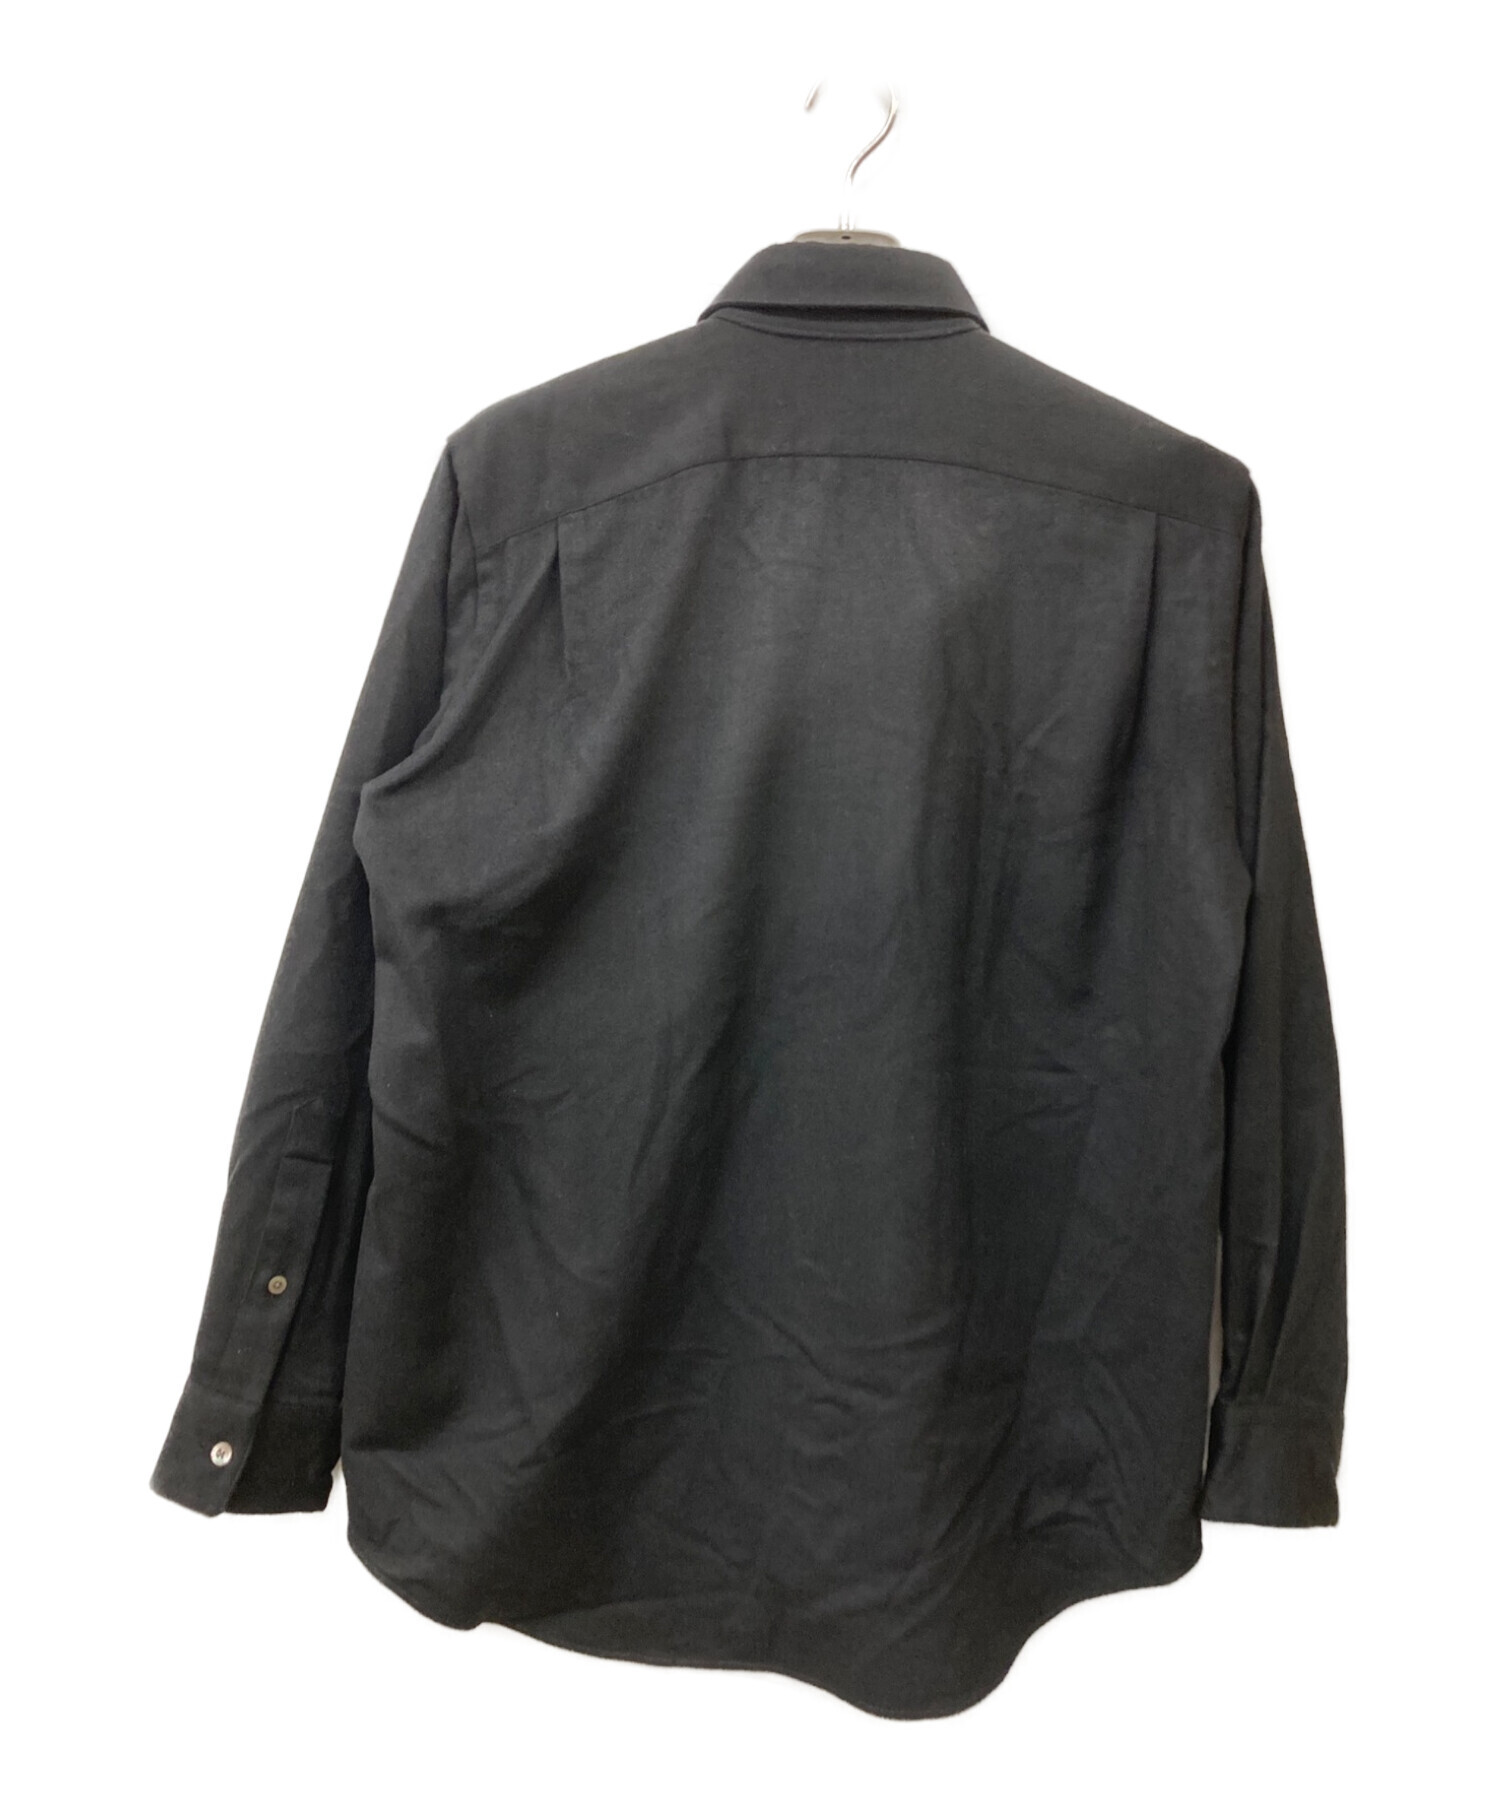 MARKAWARE (マーカウェア) CASHMERE FLY FRONT SHIRT カシミヤシャツ ブラック サイズ:2 未使用品